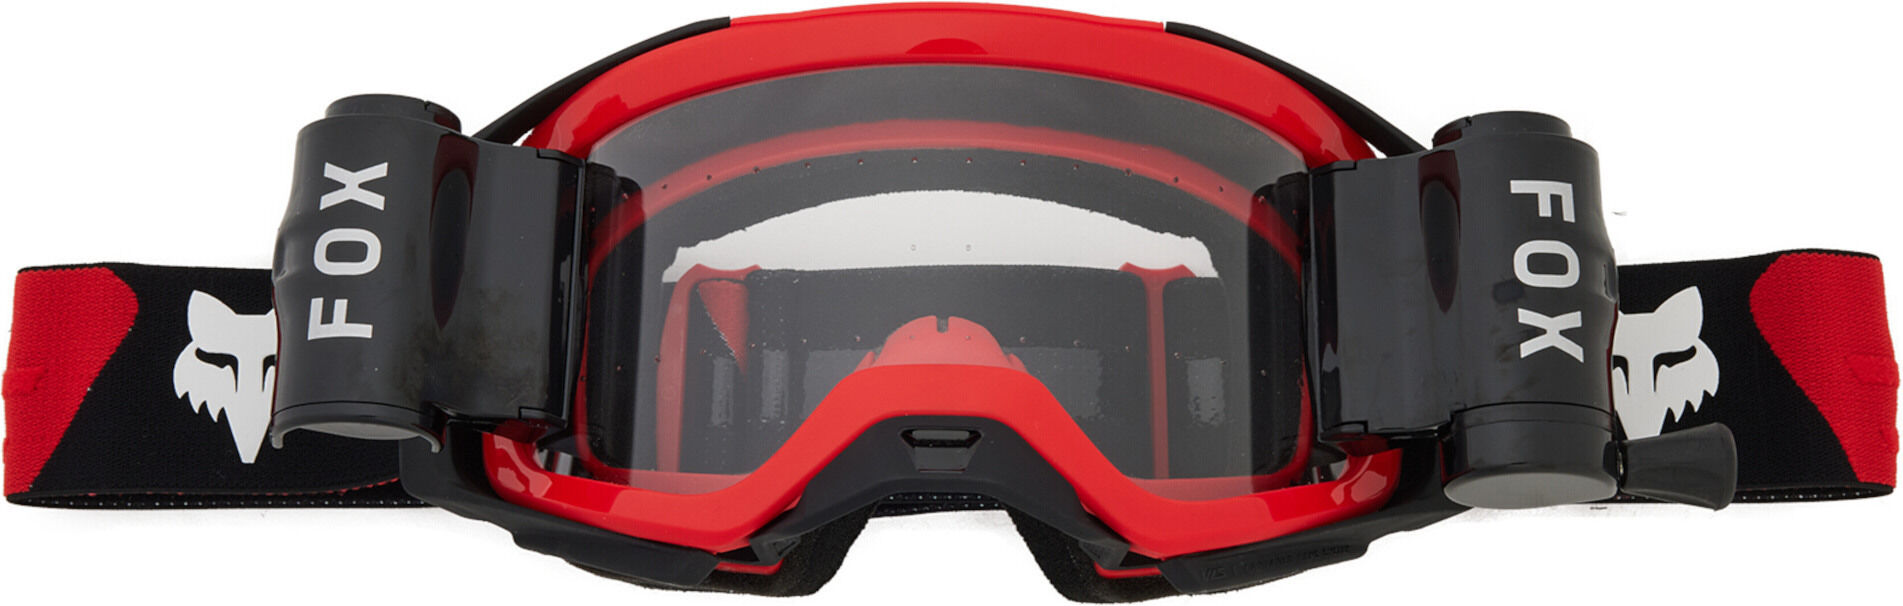 Fox Airspace Roll Off Gafas de motocross - Negro Blanco Rojo (un tamaño)